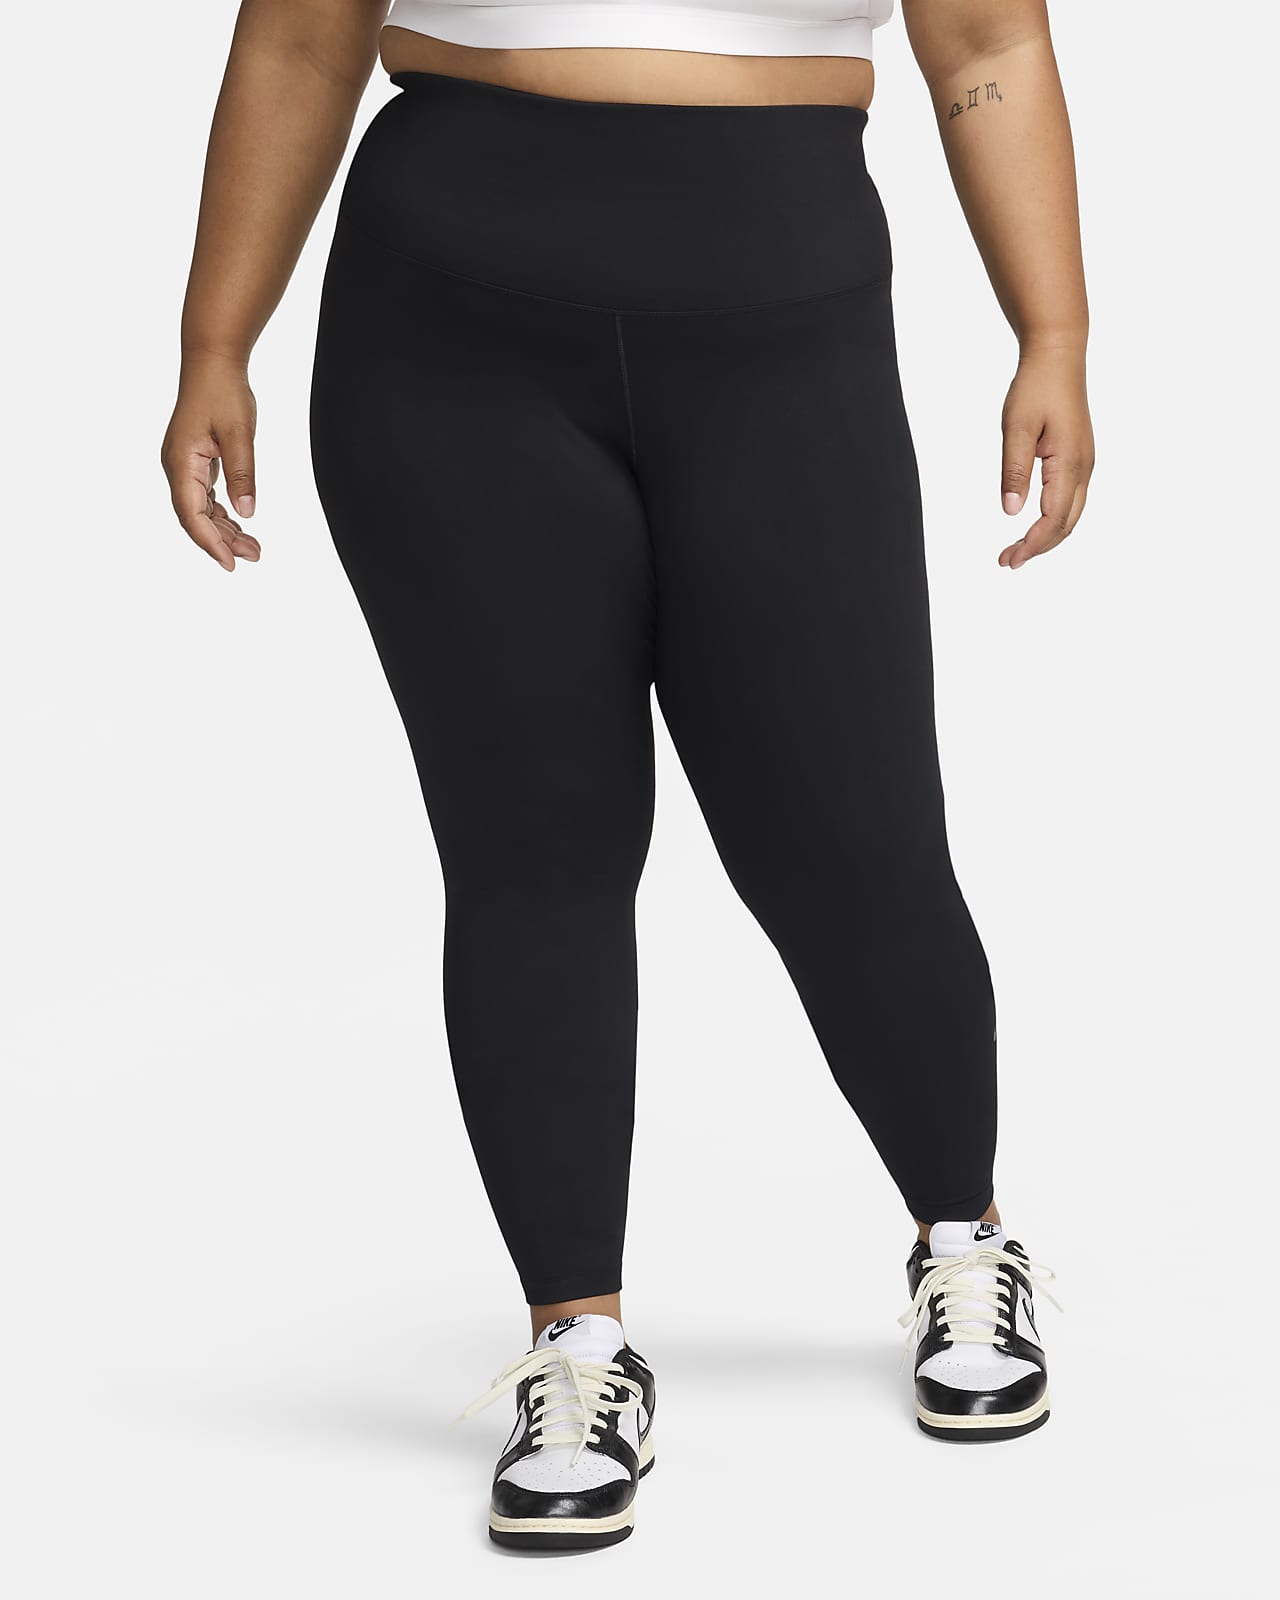 Leggings a tutta lunghezza a vita alta Nike One (Plus size) – Donna